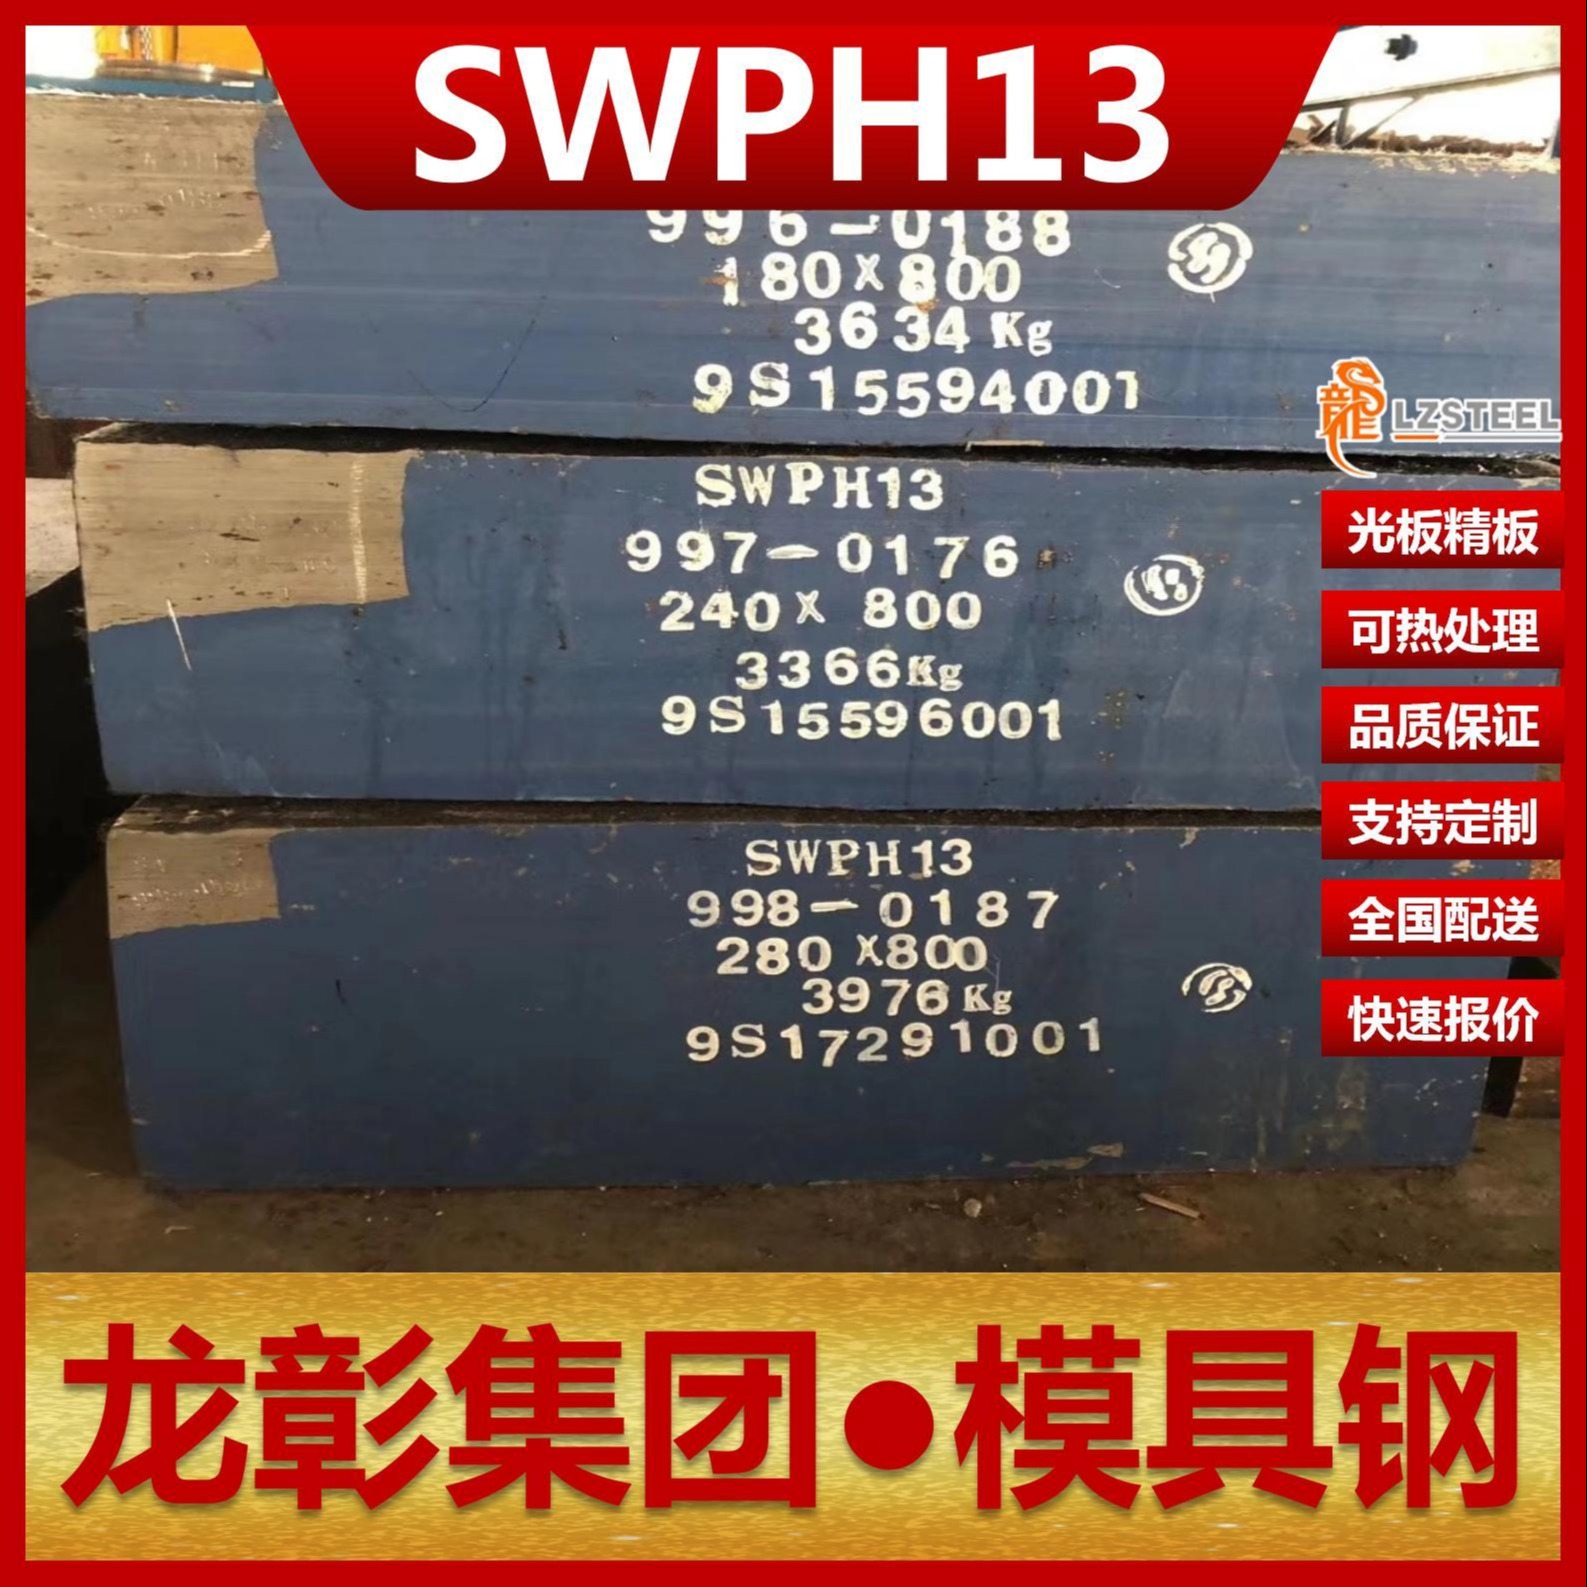 宝钢SWPH13模具钢现货批零主营SWPH13扁钢圆棒可切热作模具钢